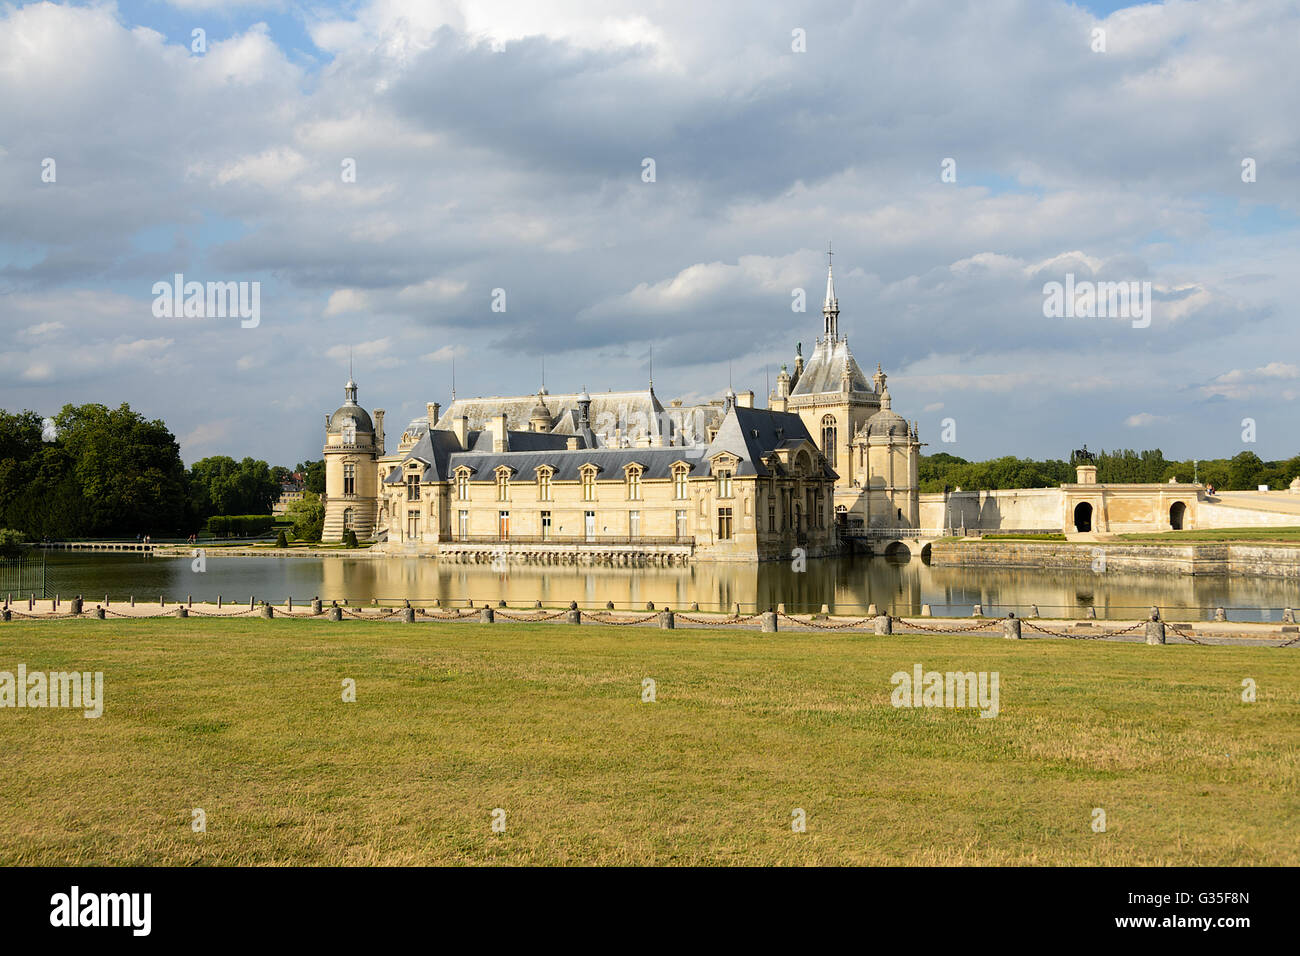 Chantilly, Frankreich - 8. August 2013: Chateau de Chantilly (Schloss Chantilly), befindet sich in der Stadt von Chantilly, Frankreich. Die Cha Stockfoto